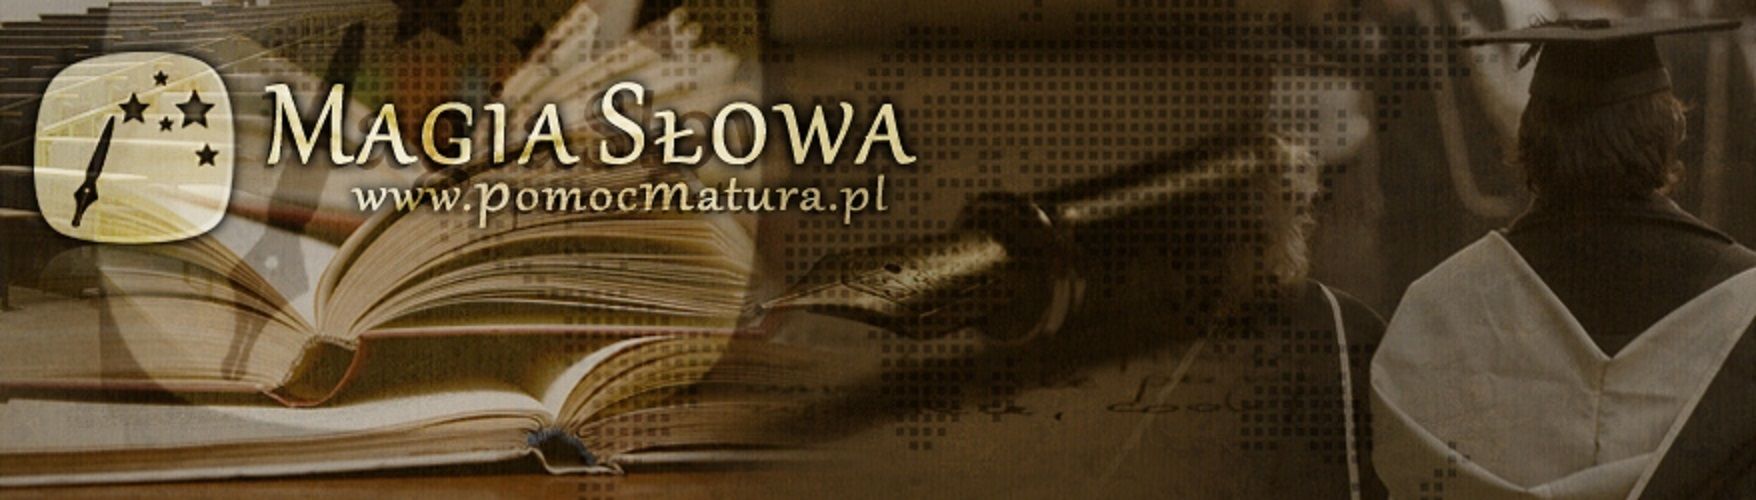 Prace dyplomowe referaty eseje zadania szkolne - ekspresowo bez zaliczki Warszawa - Zdjęcie 1